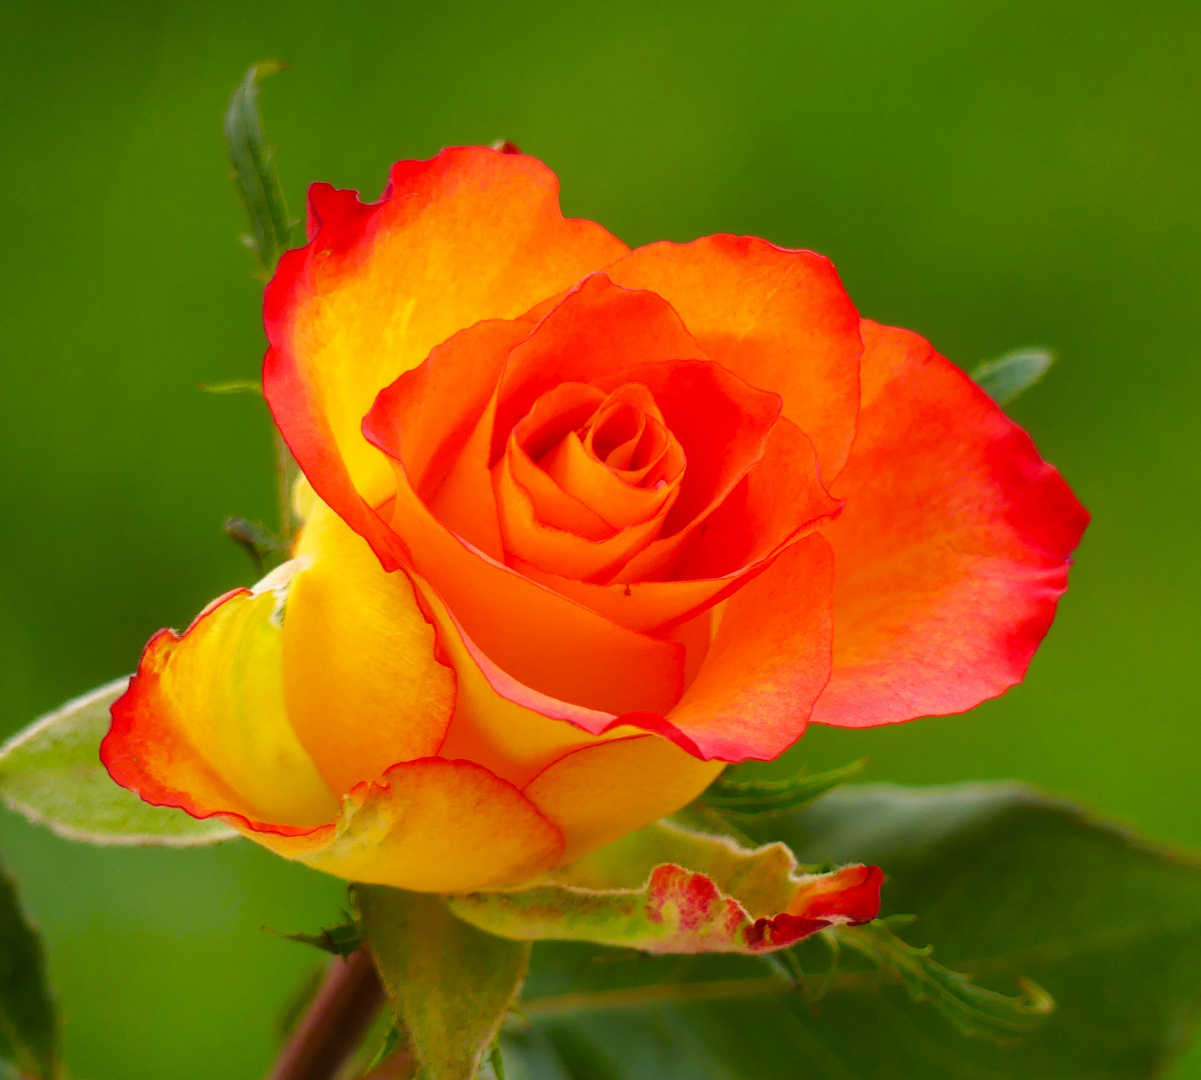 Mein heutiges Mittwochsblümchen - die gelbe Rose mit Rand